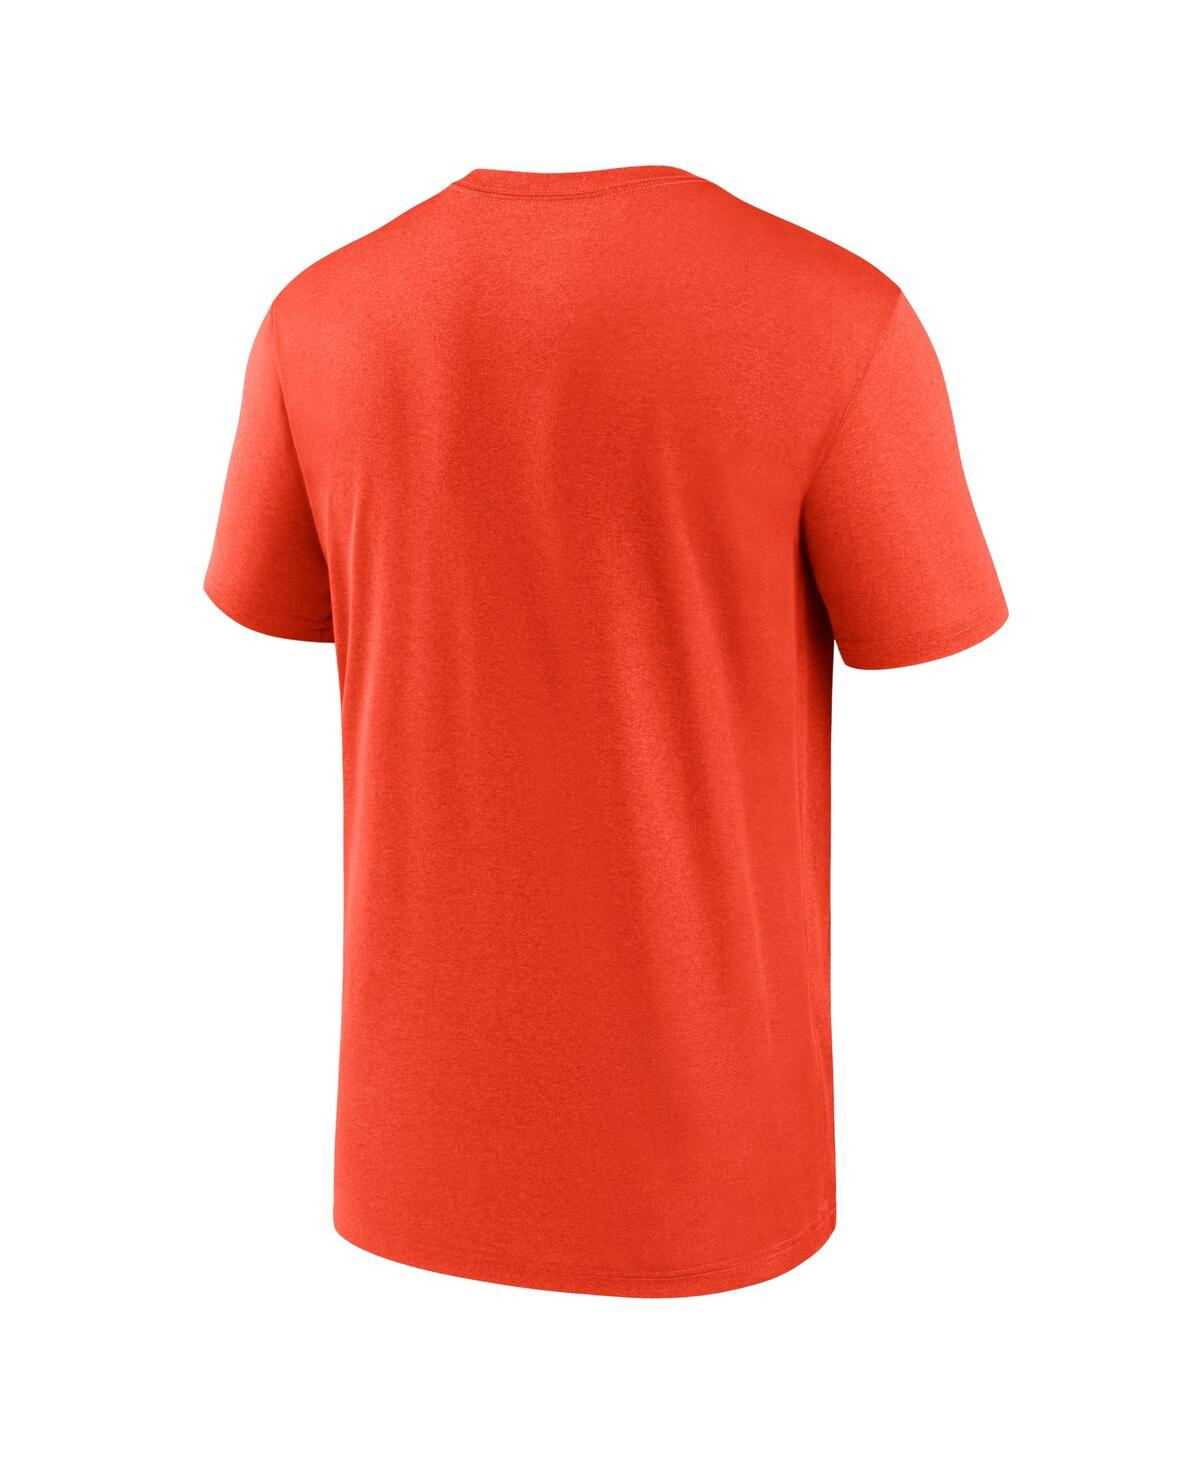 Shop Nike Men's  Orange Detroit Tigers Local Legend T-shirt